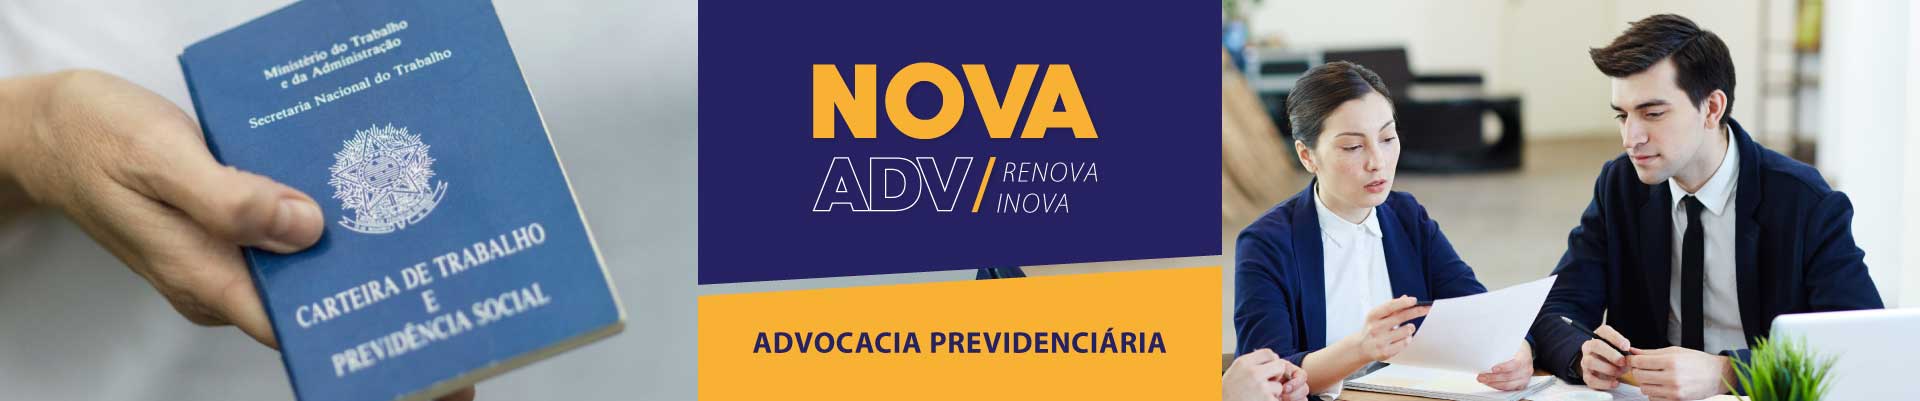 NovaAdv - Advocacia previdenciária